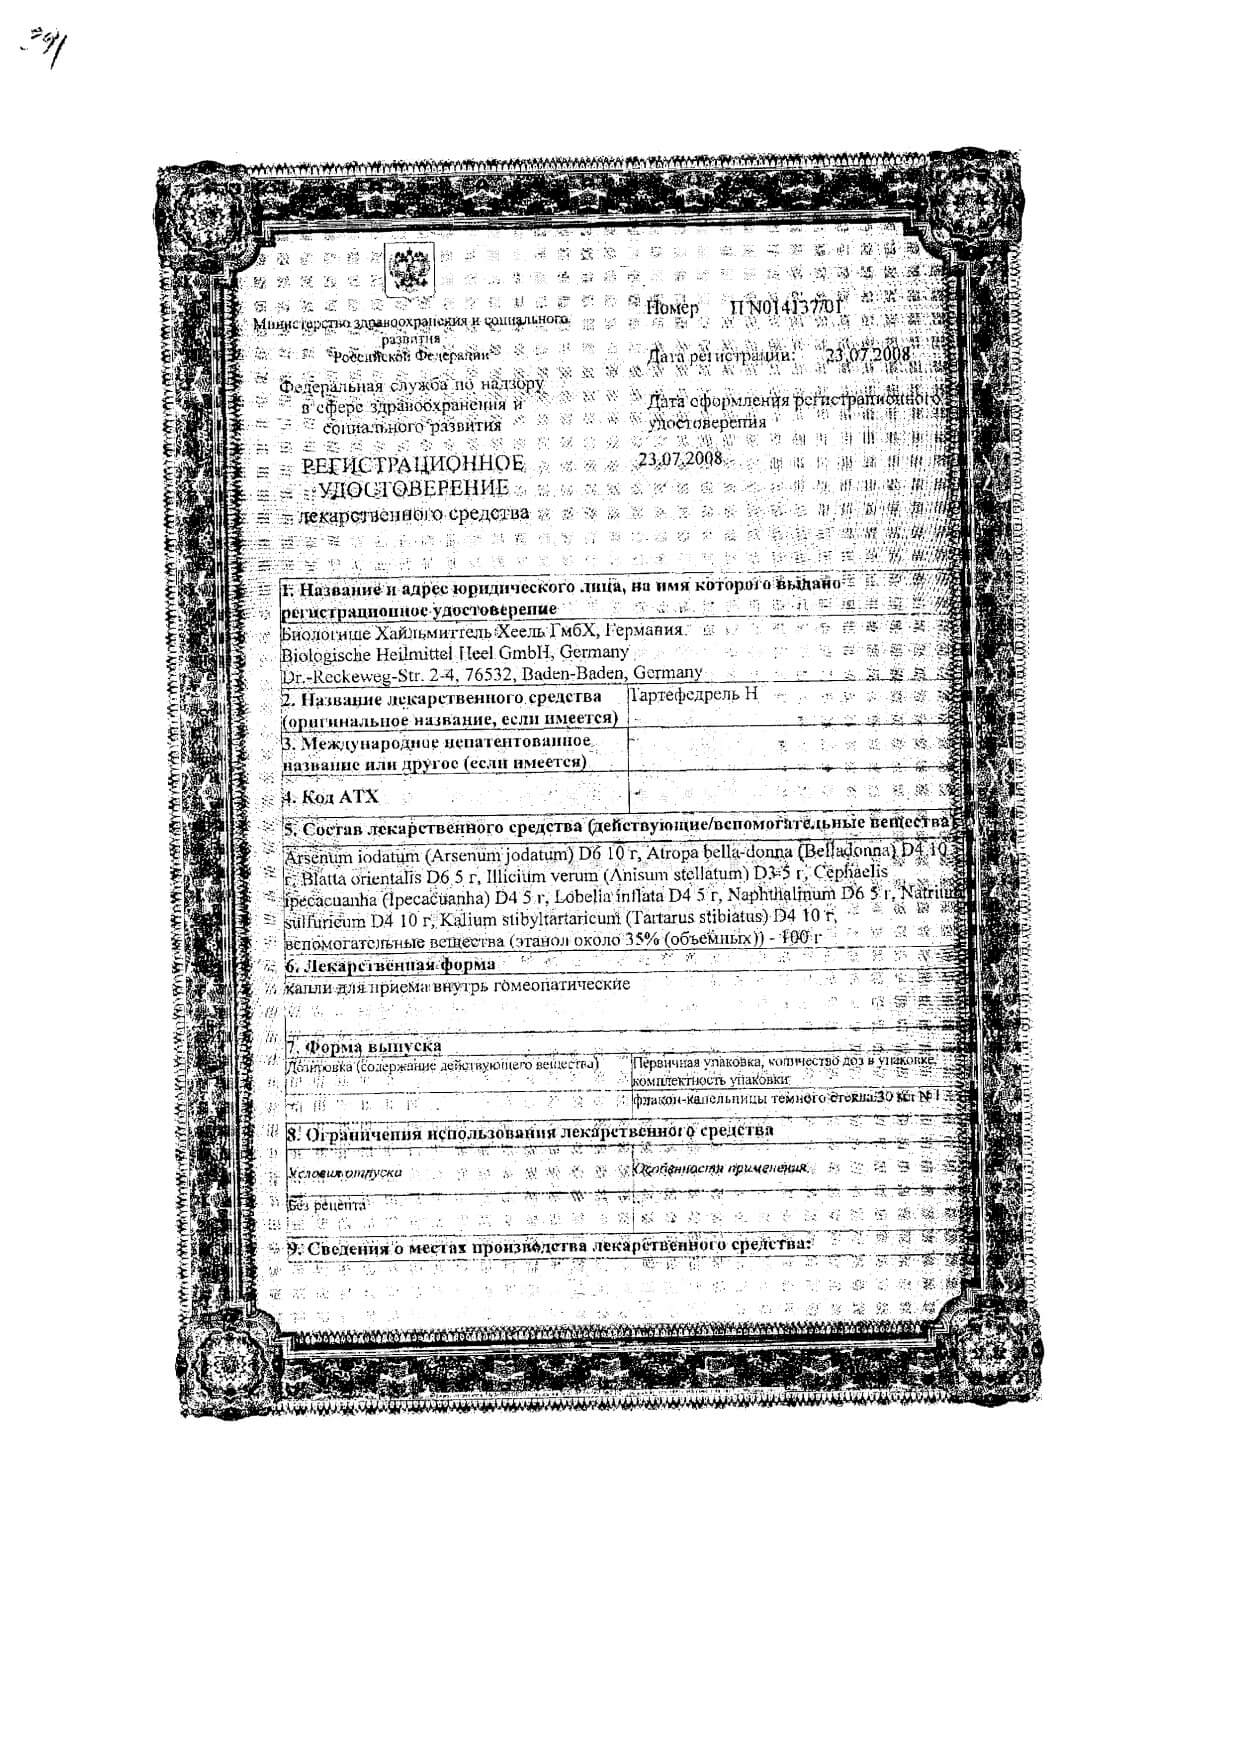 Тартефедрель Н капли для внутреннего приема гомеопатический флакон-капельница 30мл: сертификат